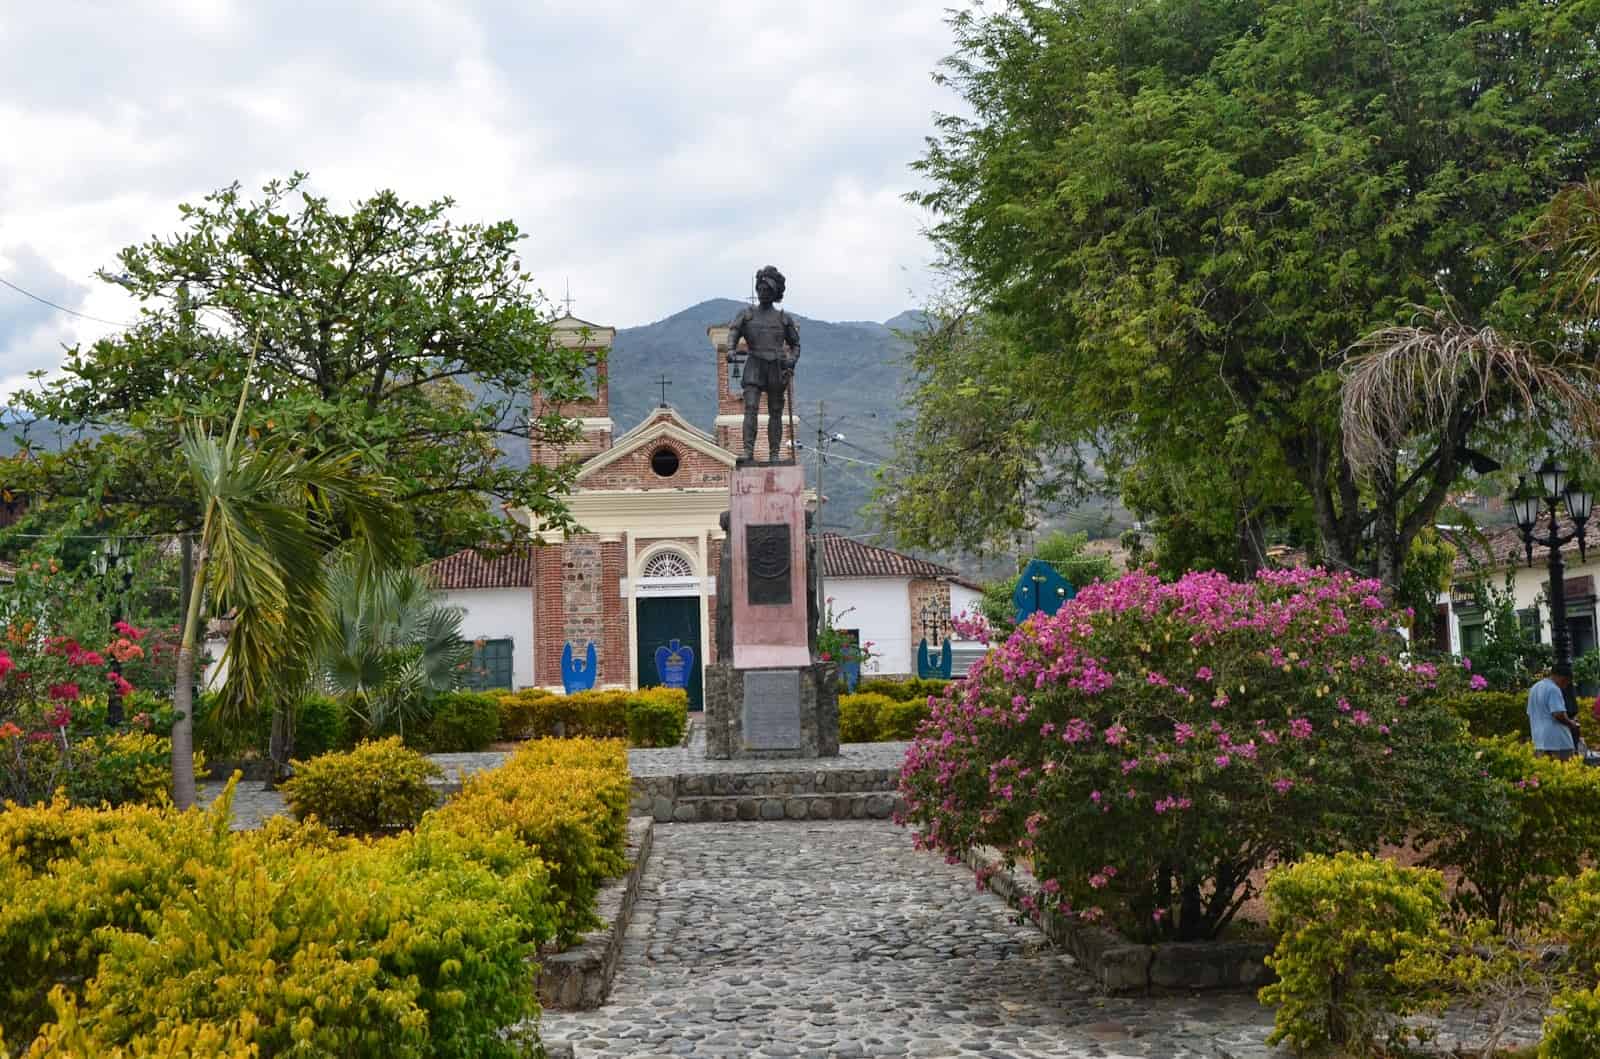 Plazuela de la Chinca in January 2015 in Santa Fe de Antioquia, Colombia